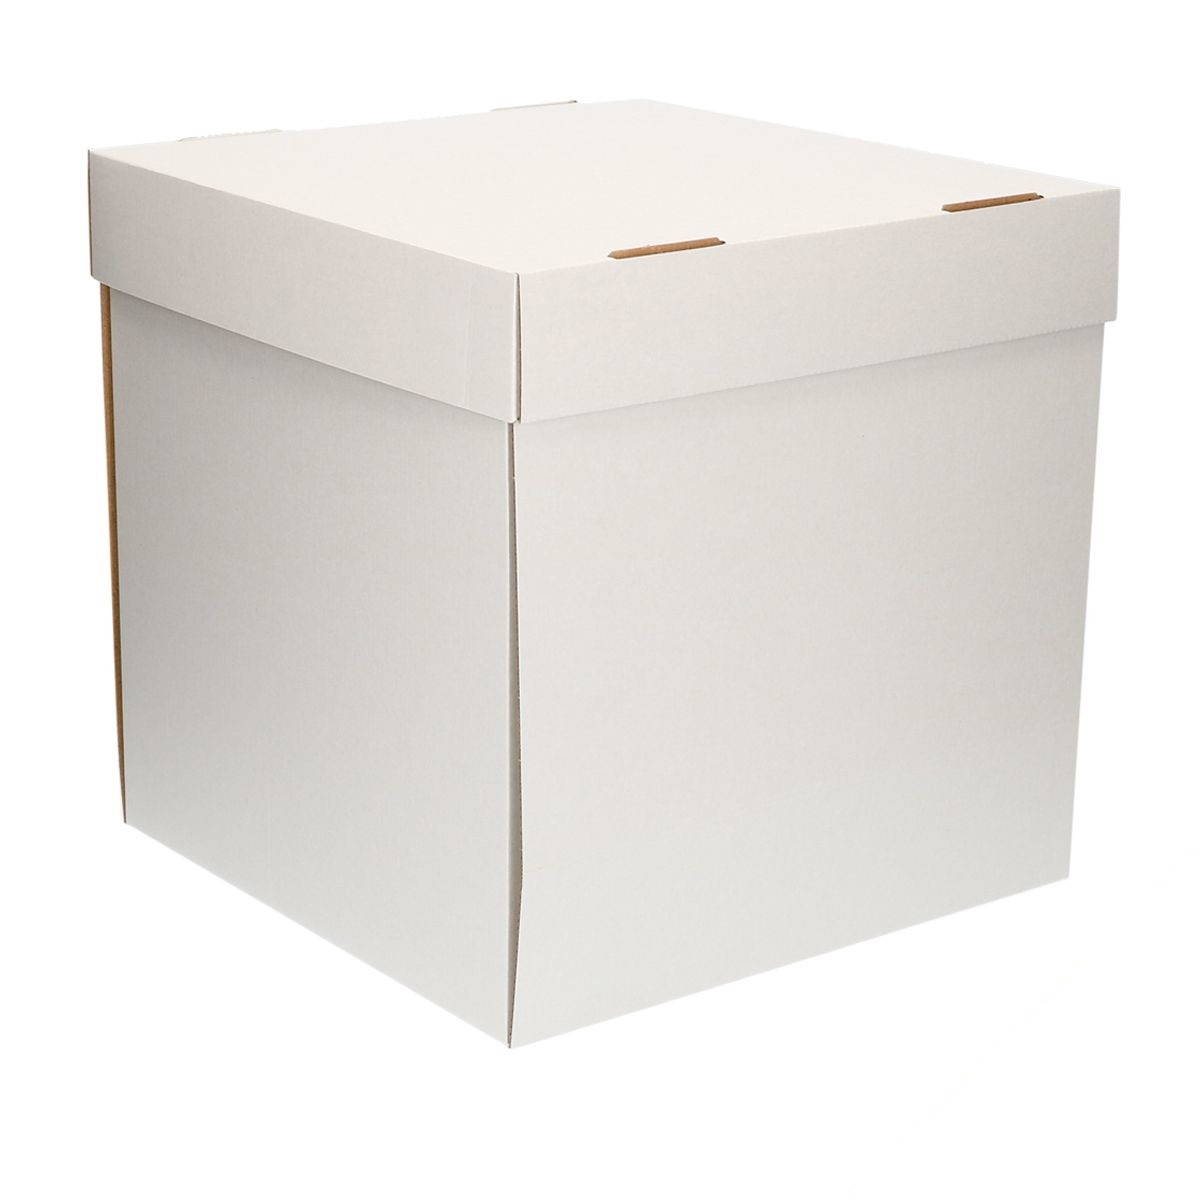  Bianco Scatola per Torte per trasportare 20 x 20 x 15 cm  Blanko  FunCakes Portatorta  